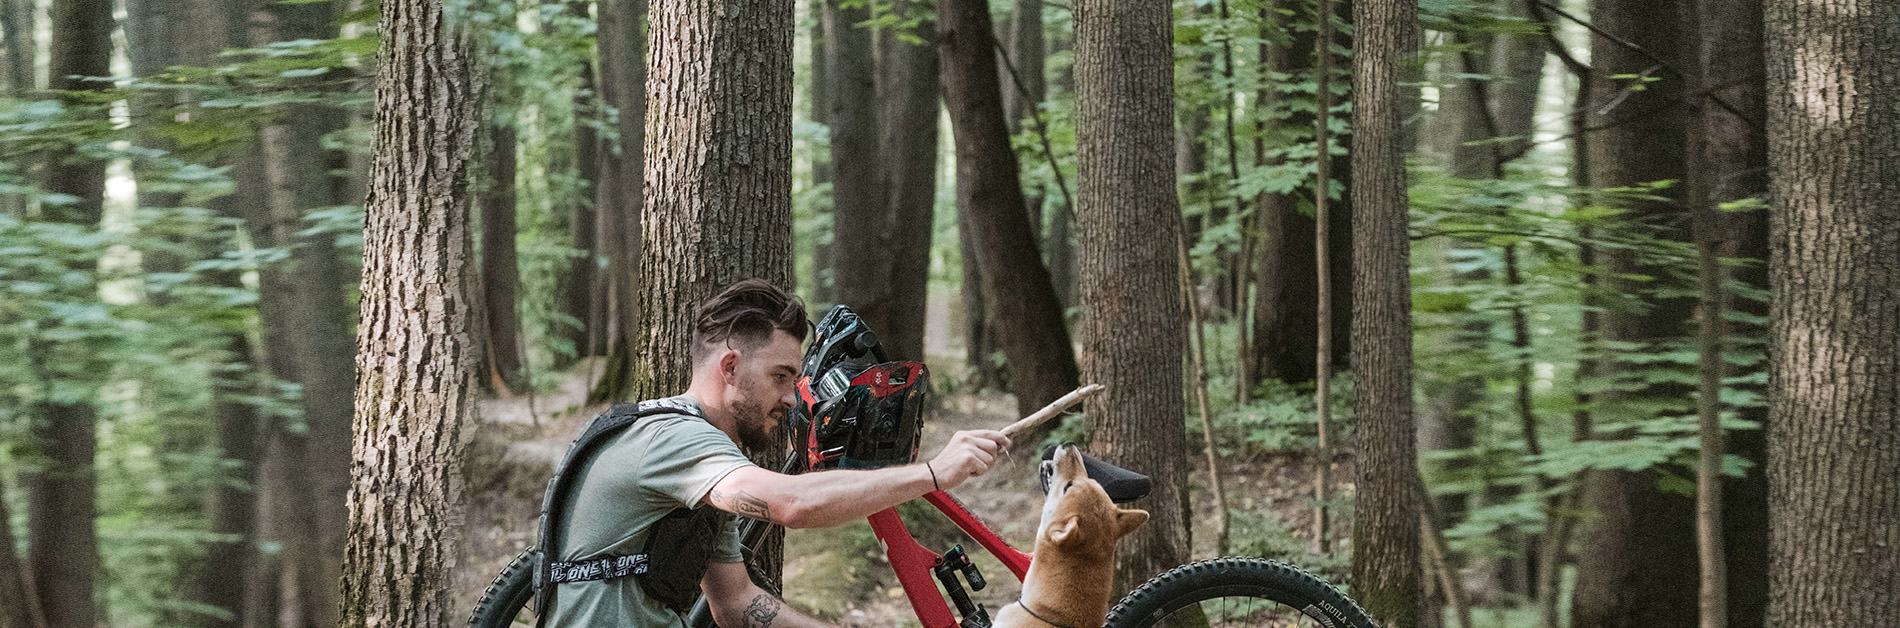 Mountainbike und Hund 